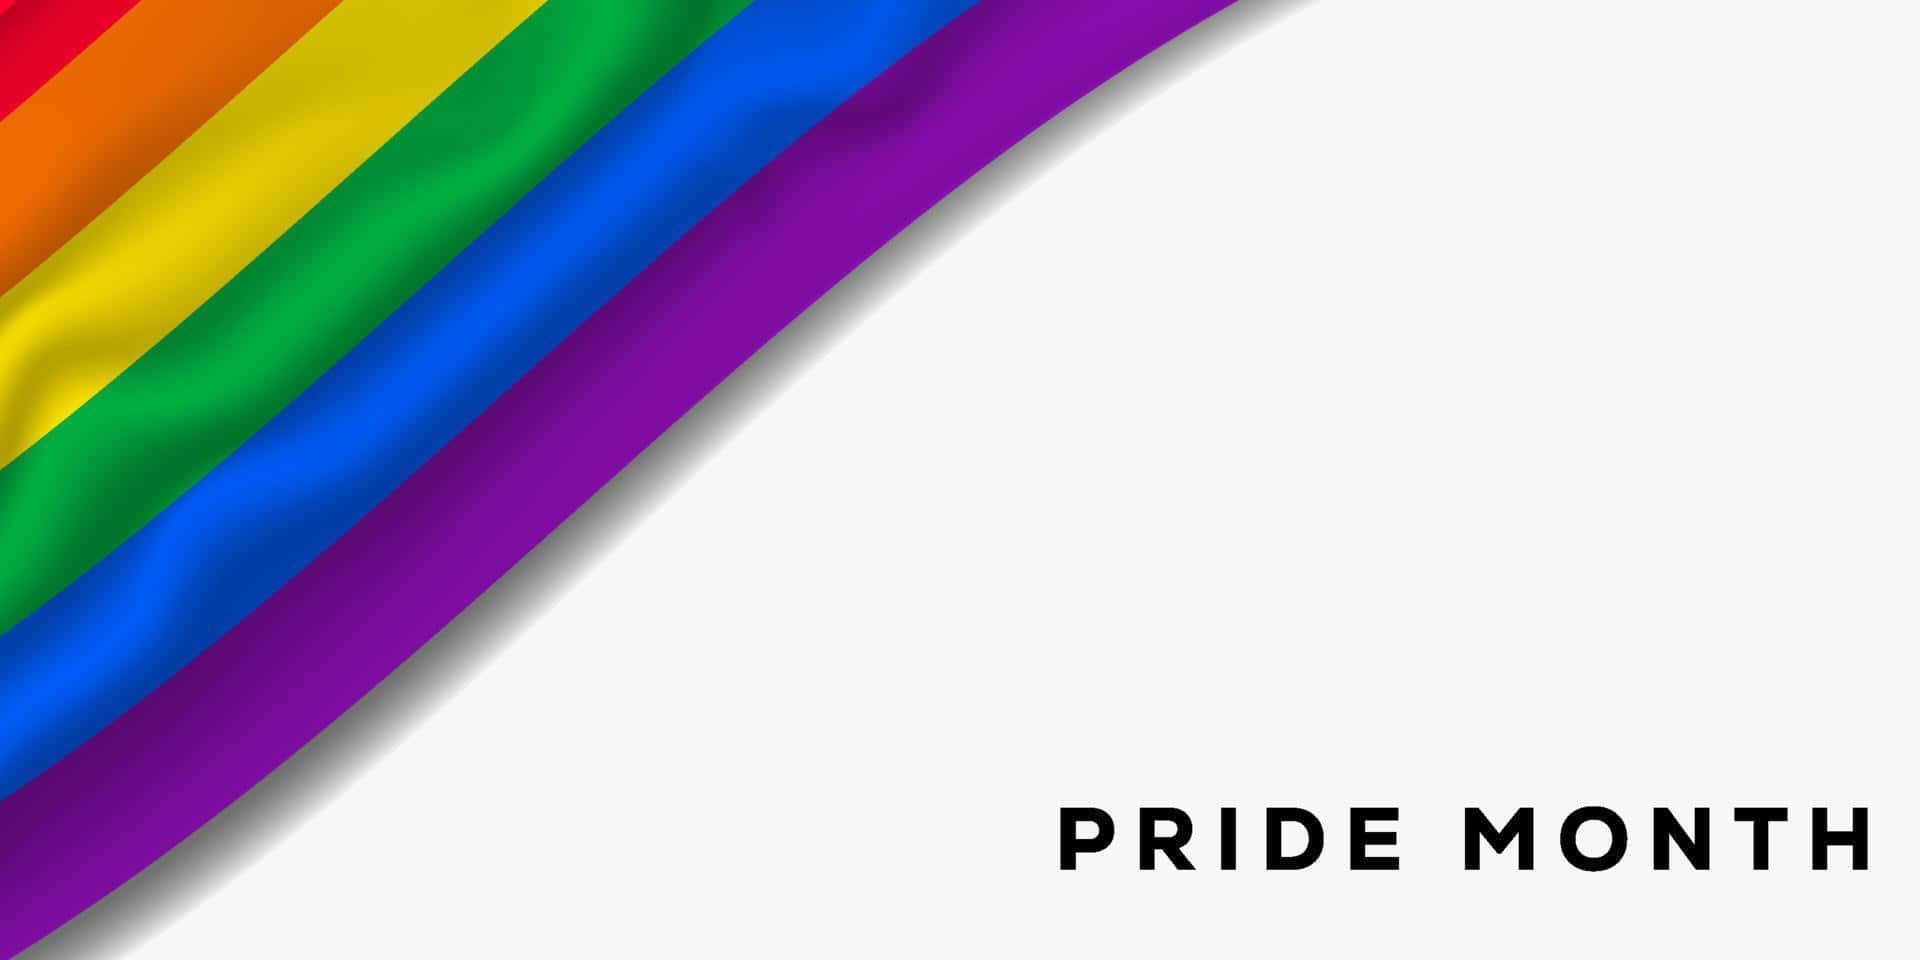 Unsímbolo De Aceptación E Inclusión, Esta Colorida Bandera Del Orgullo Arcoíris Ondea Al Viento De La Igualdad Y El Amor.